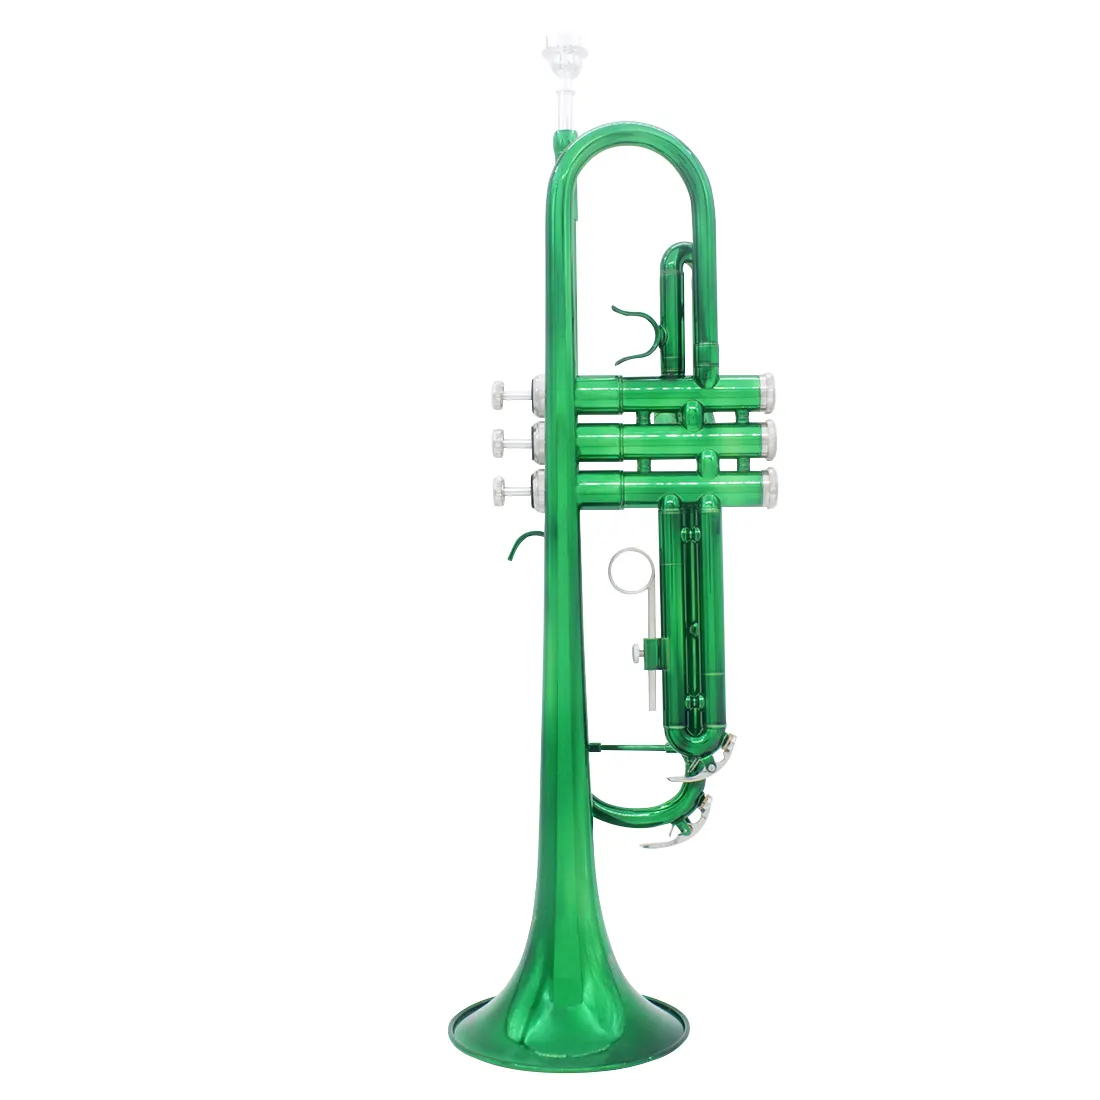 Laiton Bb trompette argent plaqué Instrument de musique coloré pour étudiant débutant vert